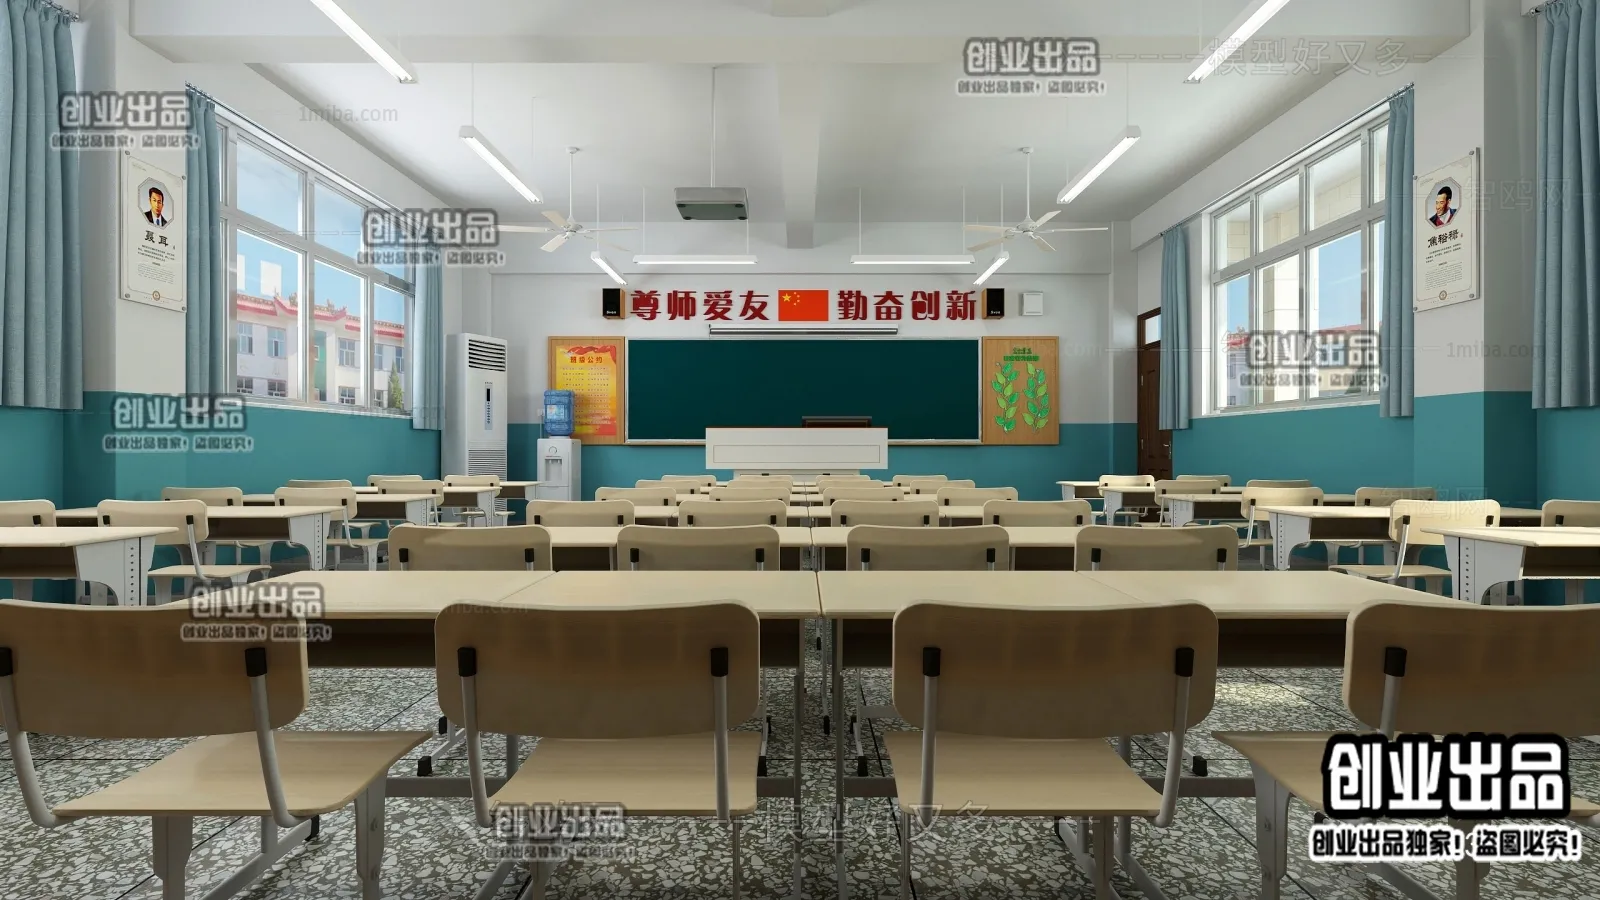 3D SCHOOL INTERIOR (VRAY) – CLASSROOM 3D SCENES – 018